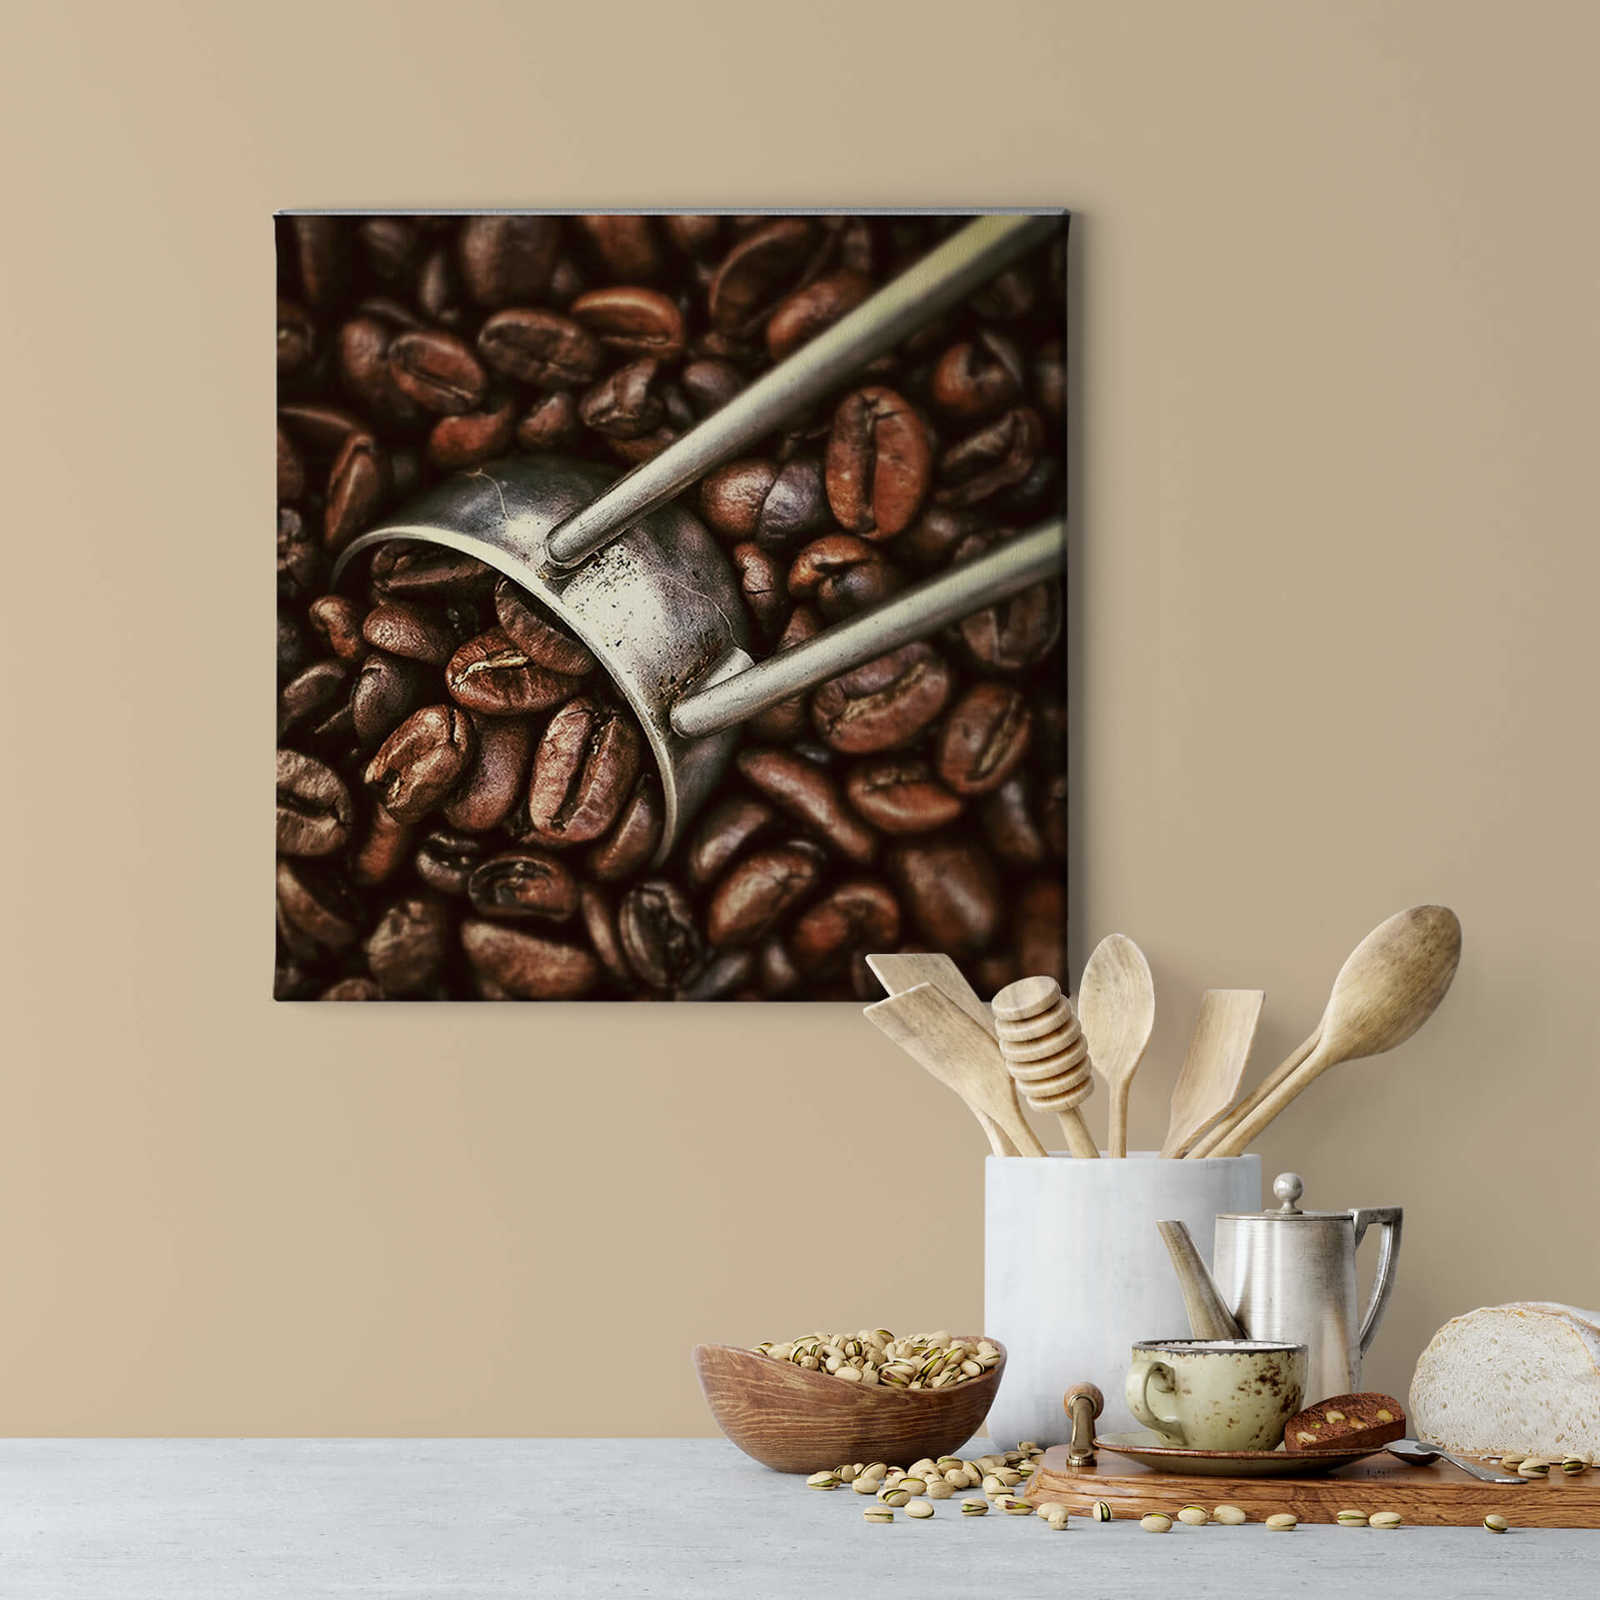             Tableau carré Grains de café - 0,50 m x 0,50 m
        